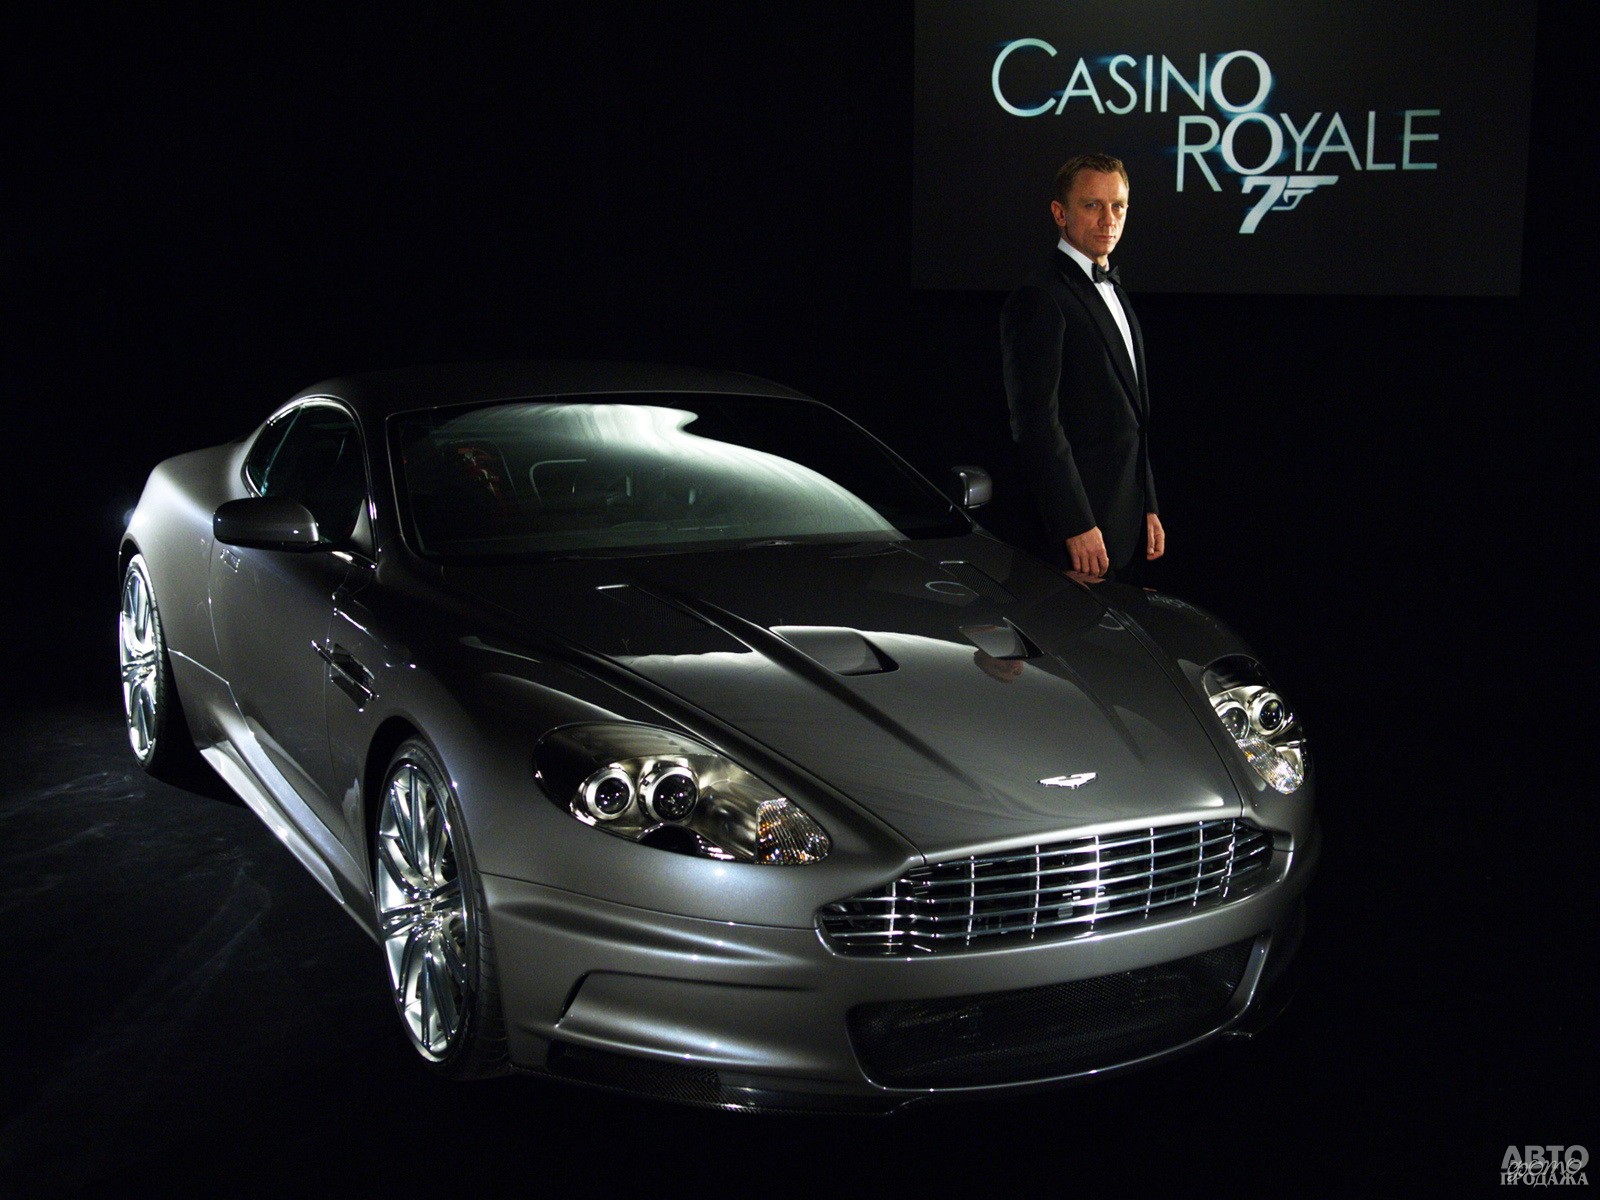 В фильмах «Казино «Рояль» и «Квант милосердия» агент использовал Aston Martin DBS